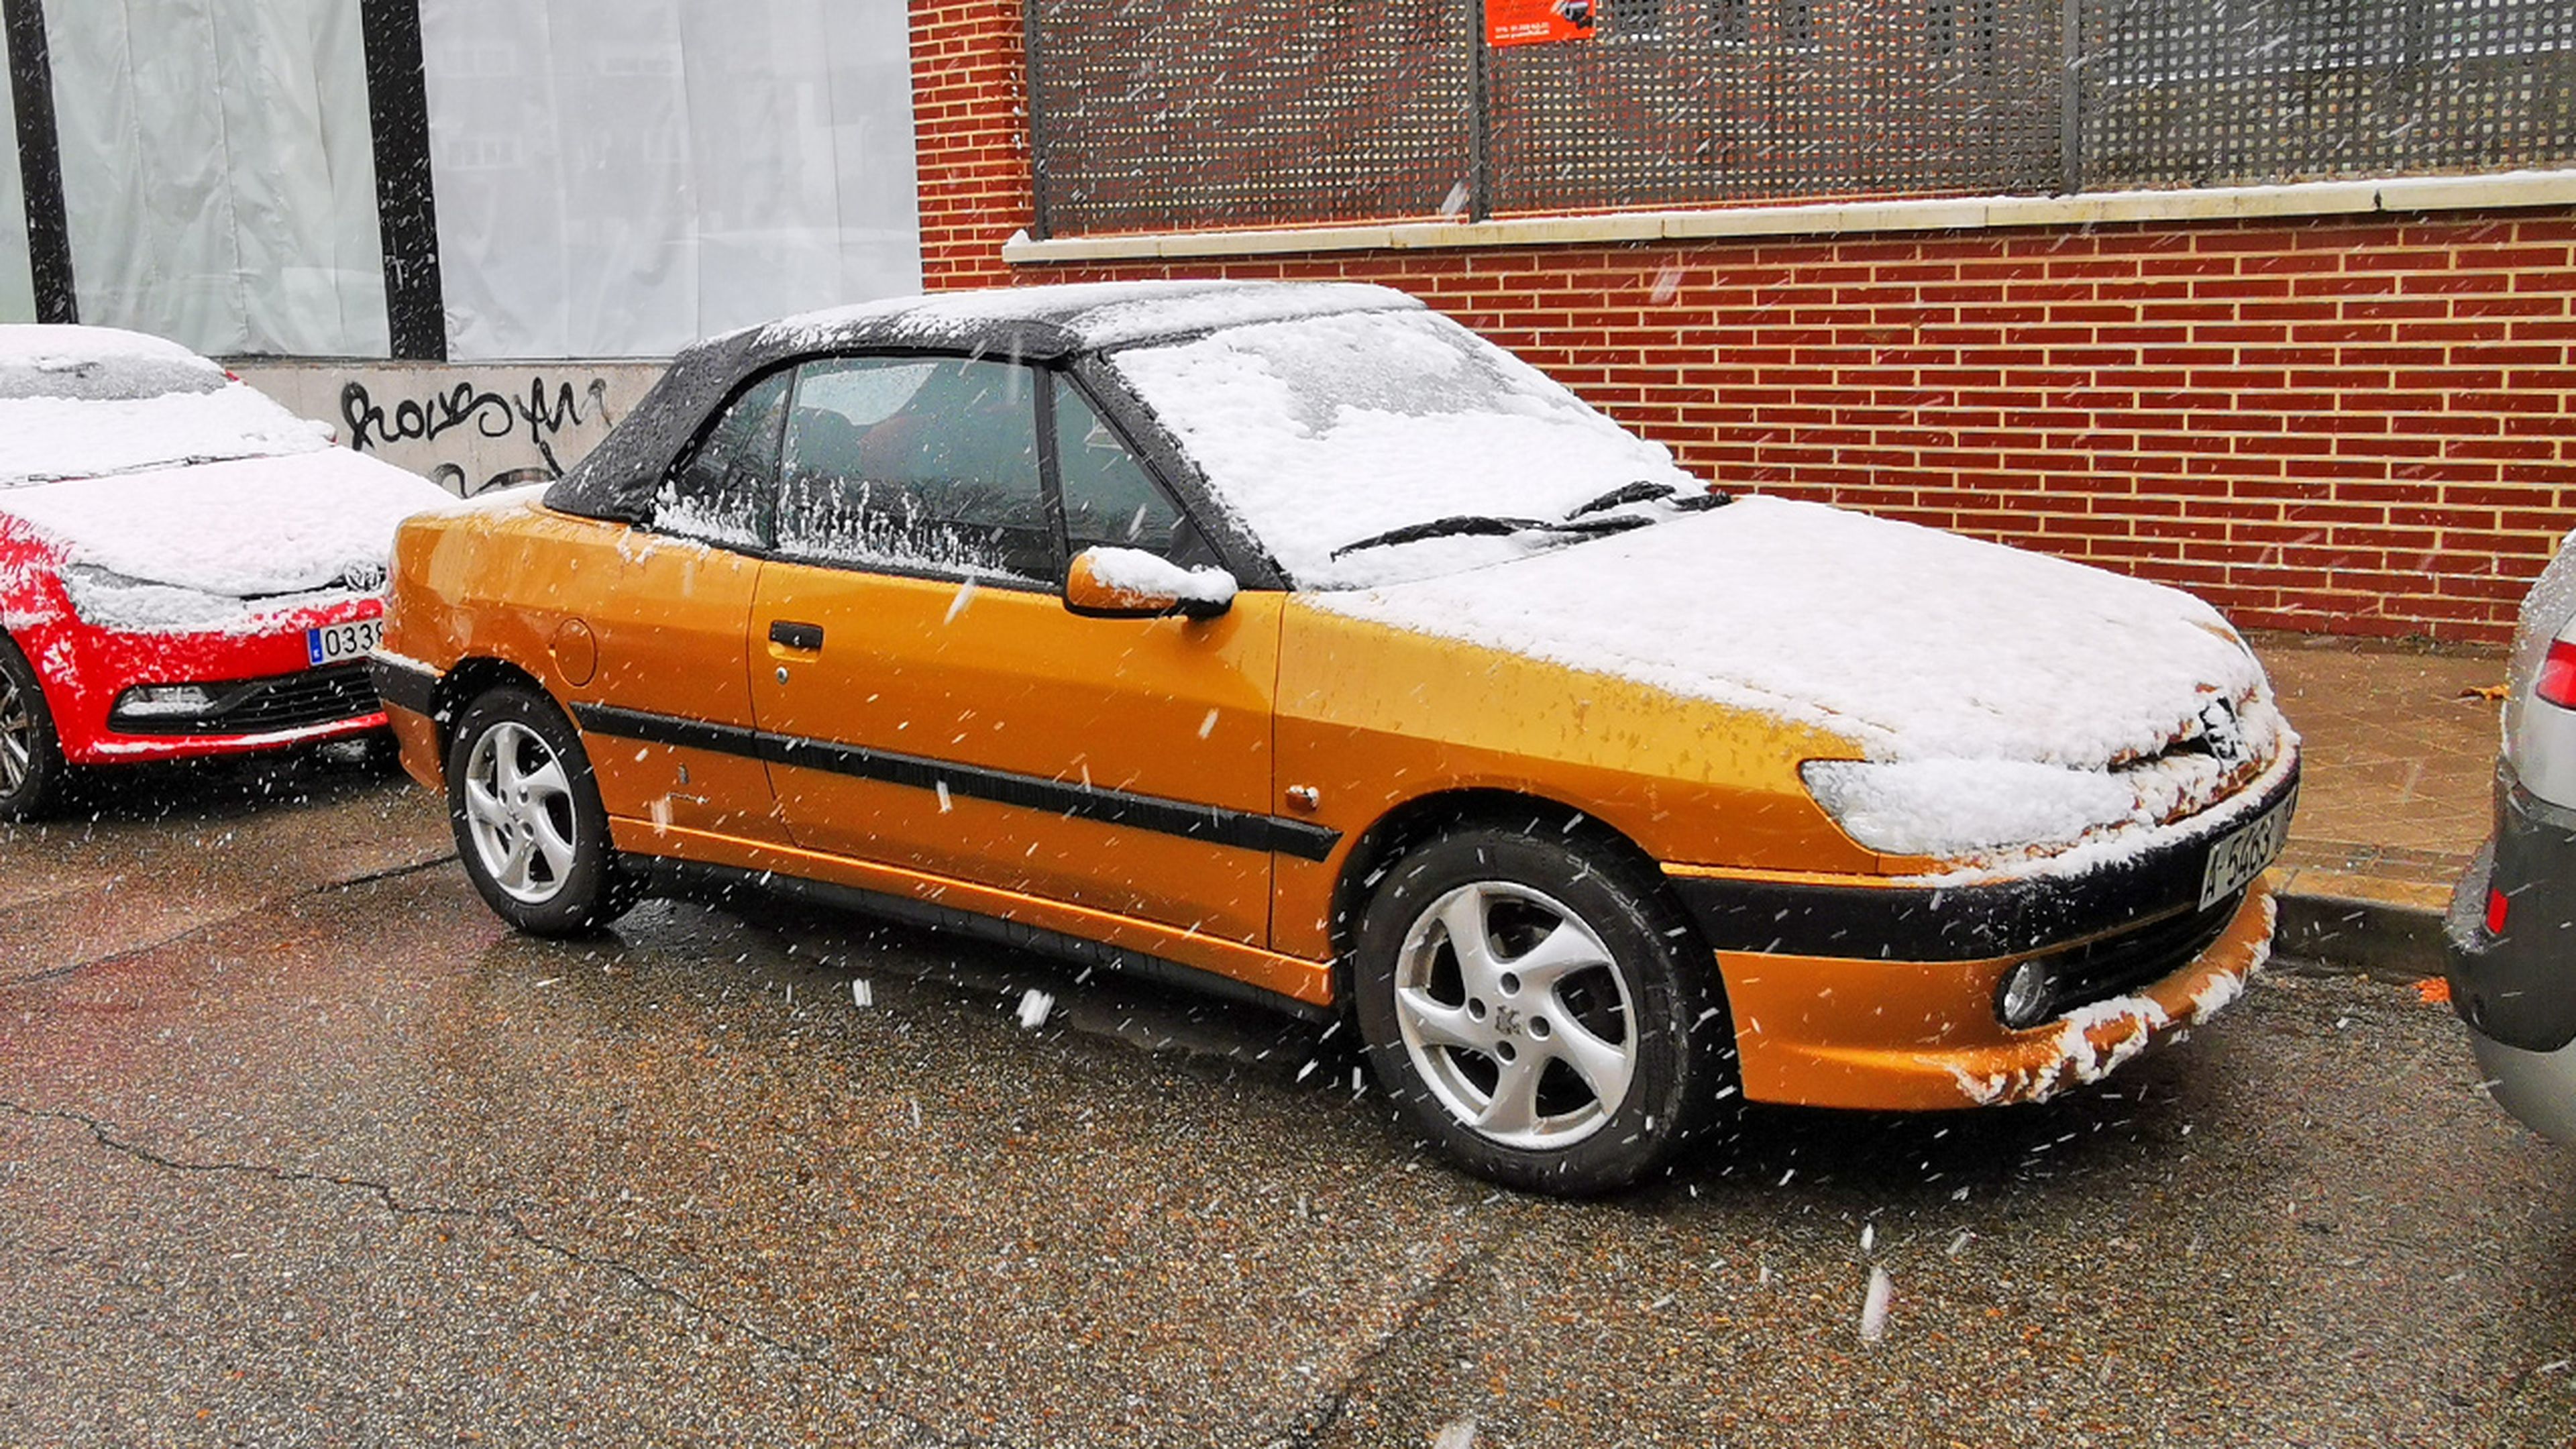 Hielo y nieve en el parabrisas de un Peugeot 306 Cabriolet